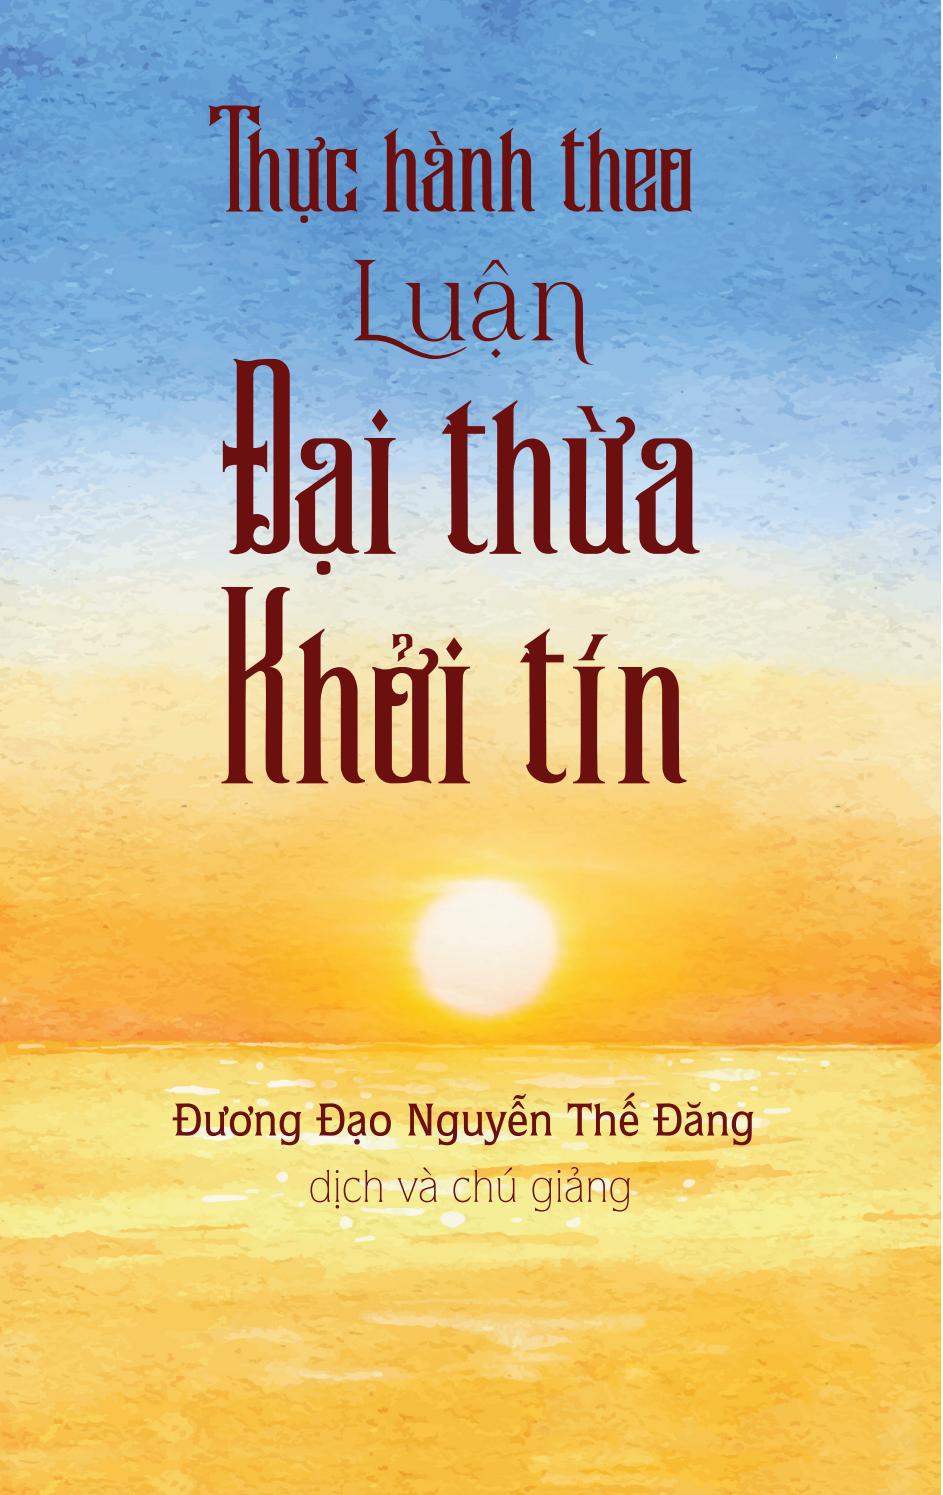 Thực Hành Theo Luận Đại Thừa Khởi Tín PDF